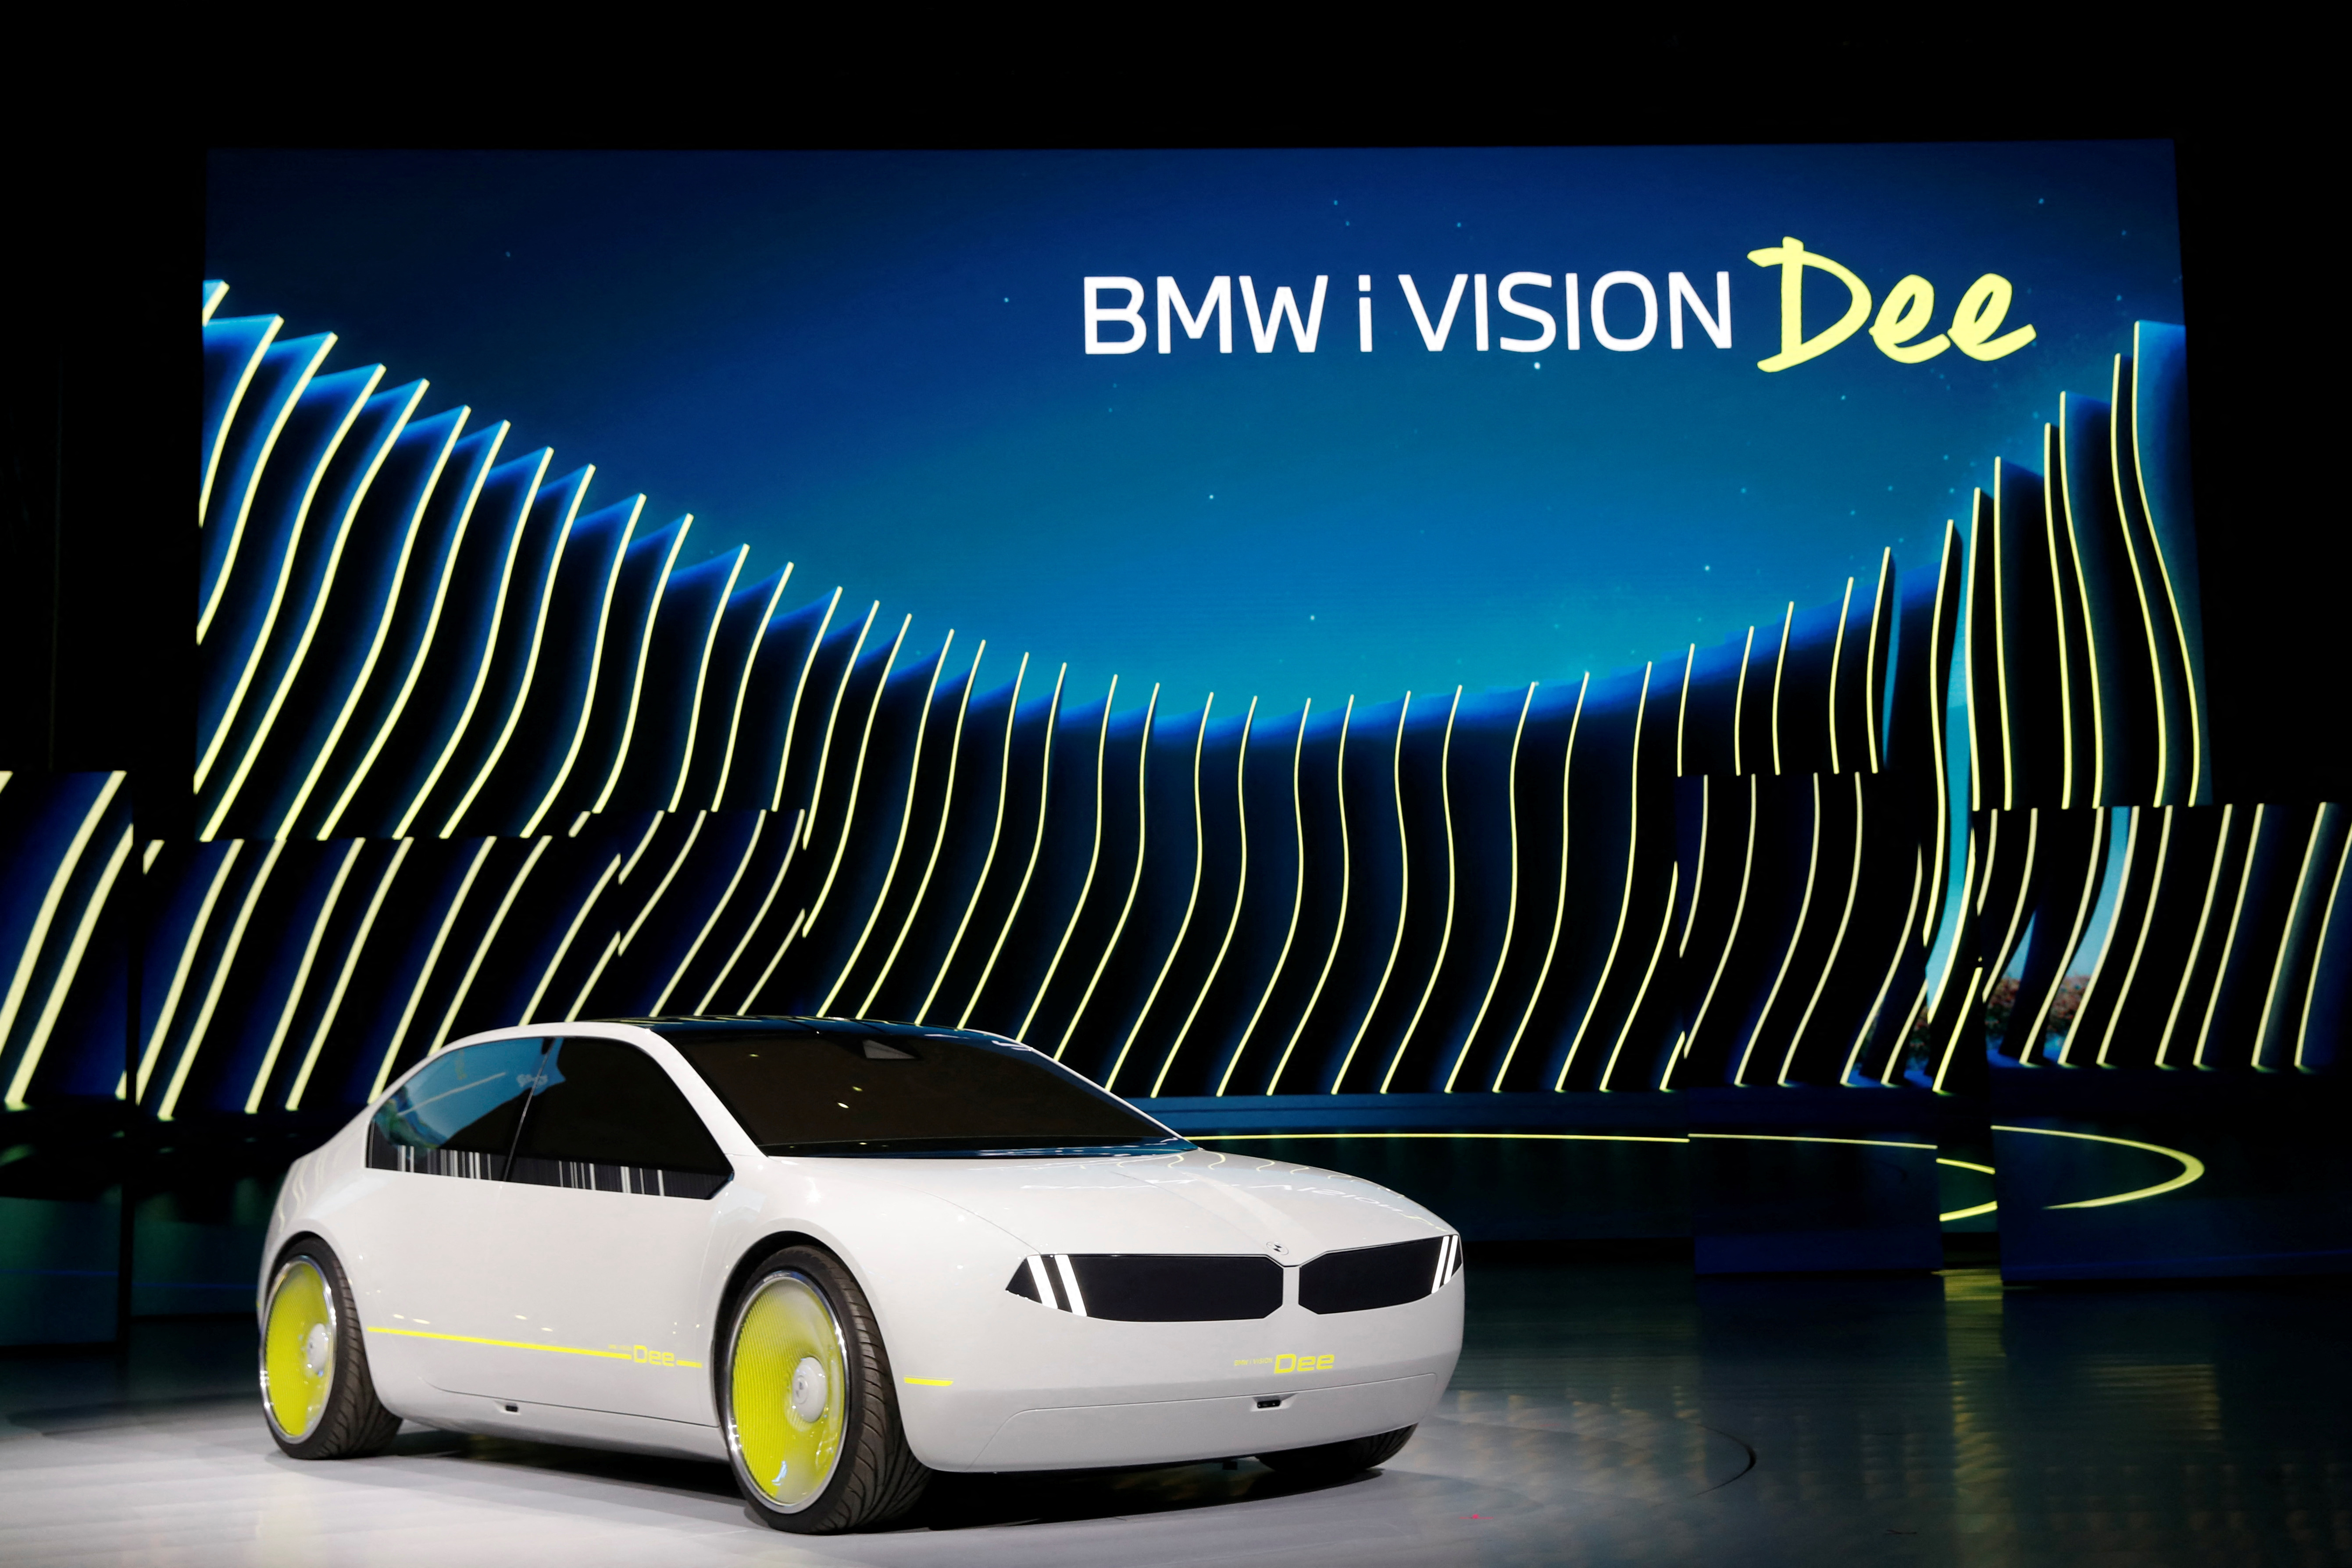 La concept car BMW i Vision Dee (Digital Emotional Experience) viene mostrata sul palco dopo la sua presentazione durante il discorso di apertura della BMW al CES 2023, una fiera annuale dell'elettronica di consumo, a Las Vegas, Nevada, USA, il 4 gennaio 2023. REUTERS/Steve Marco